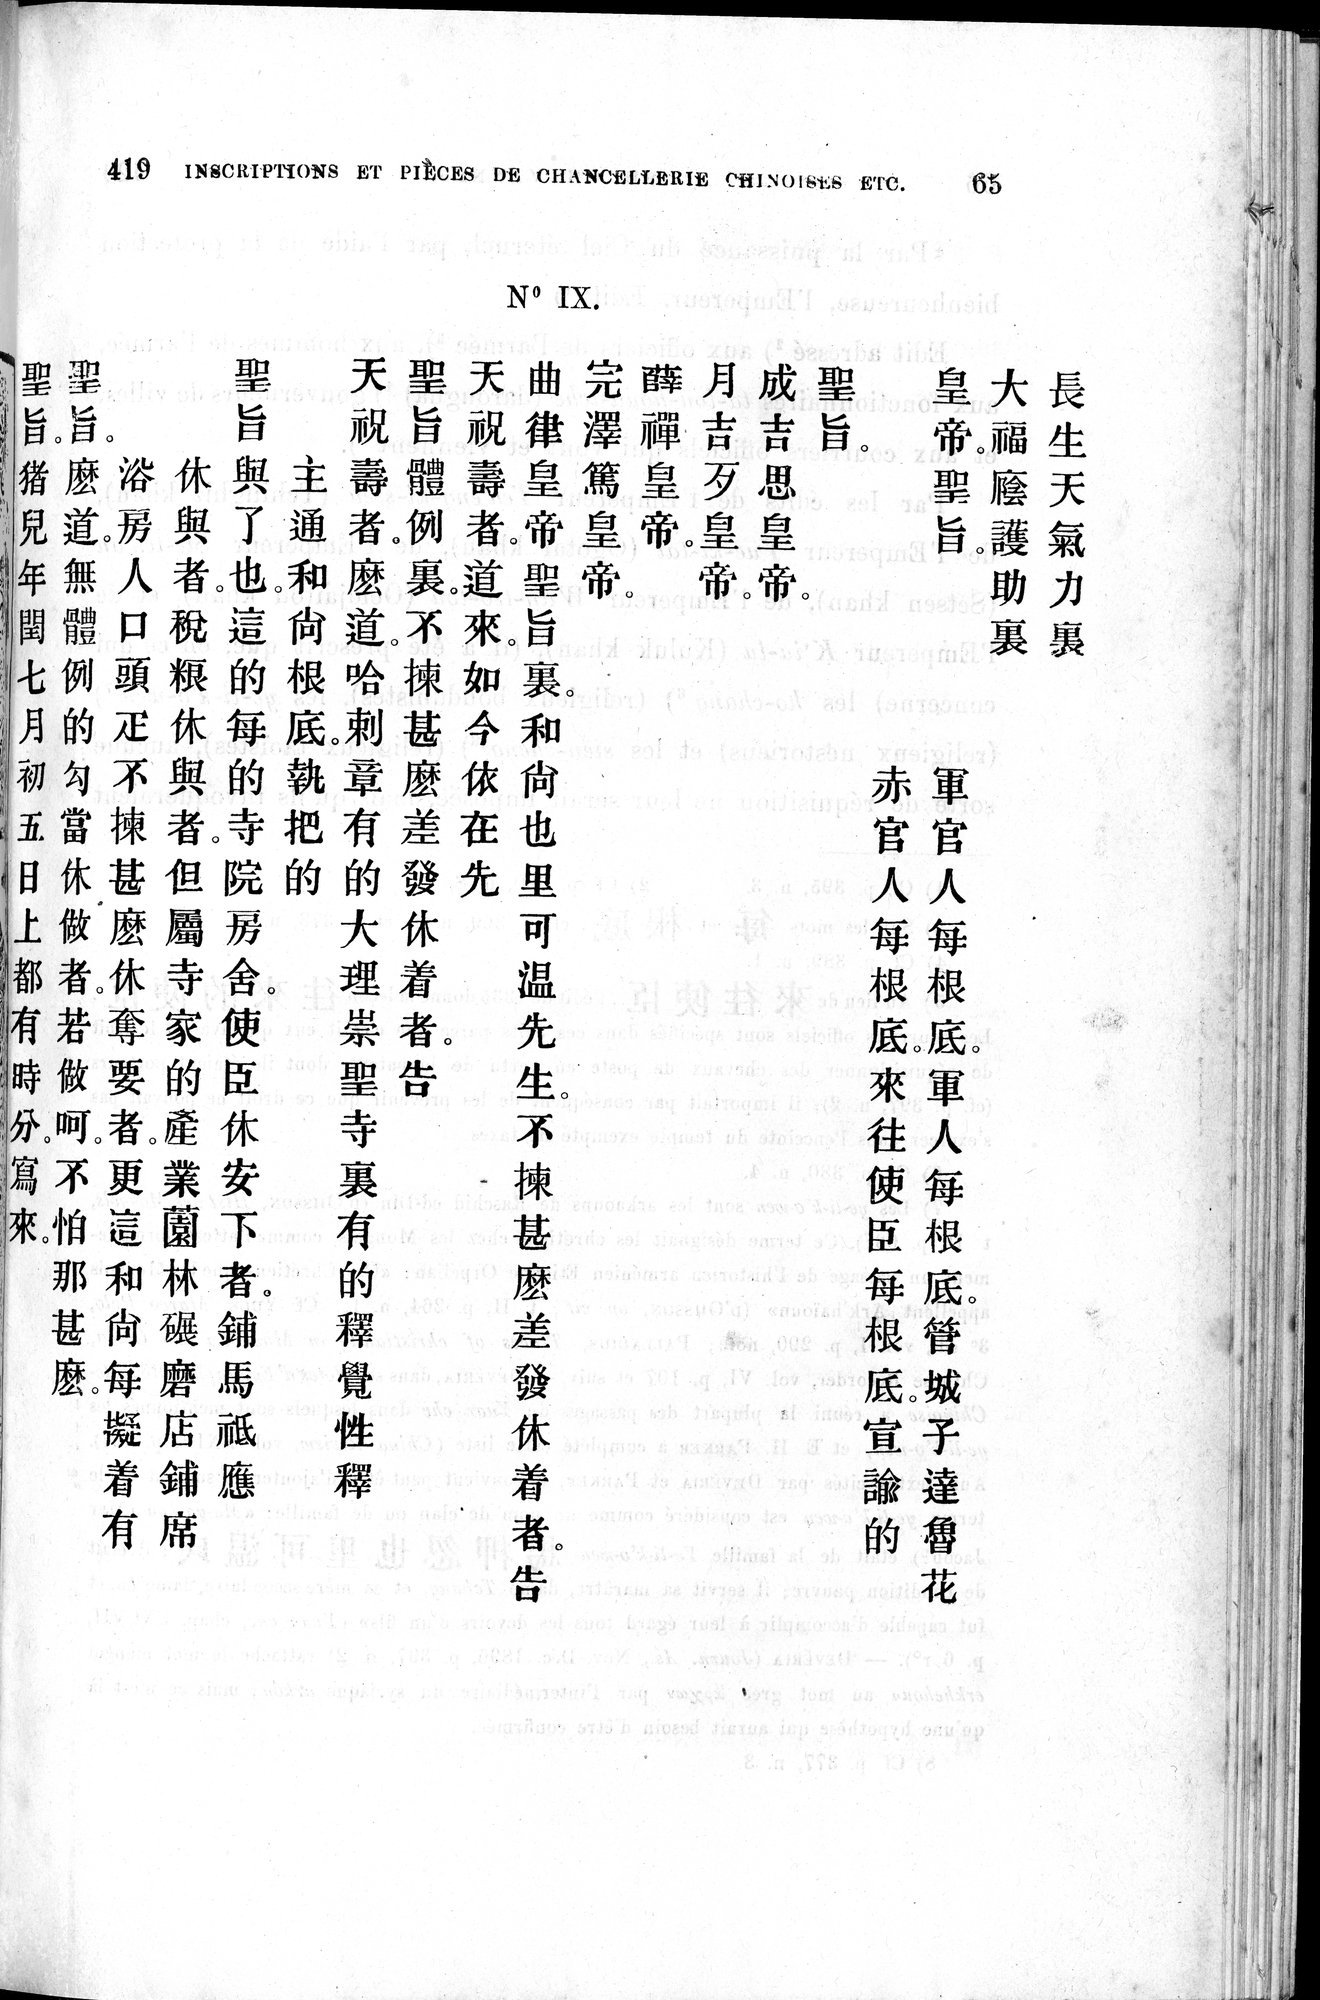 Inscriptions et pièces de Chancellerie Chinoises de l'époque mongol : vol.1 / 77 ページ（白黒高解像度画像）